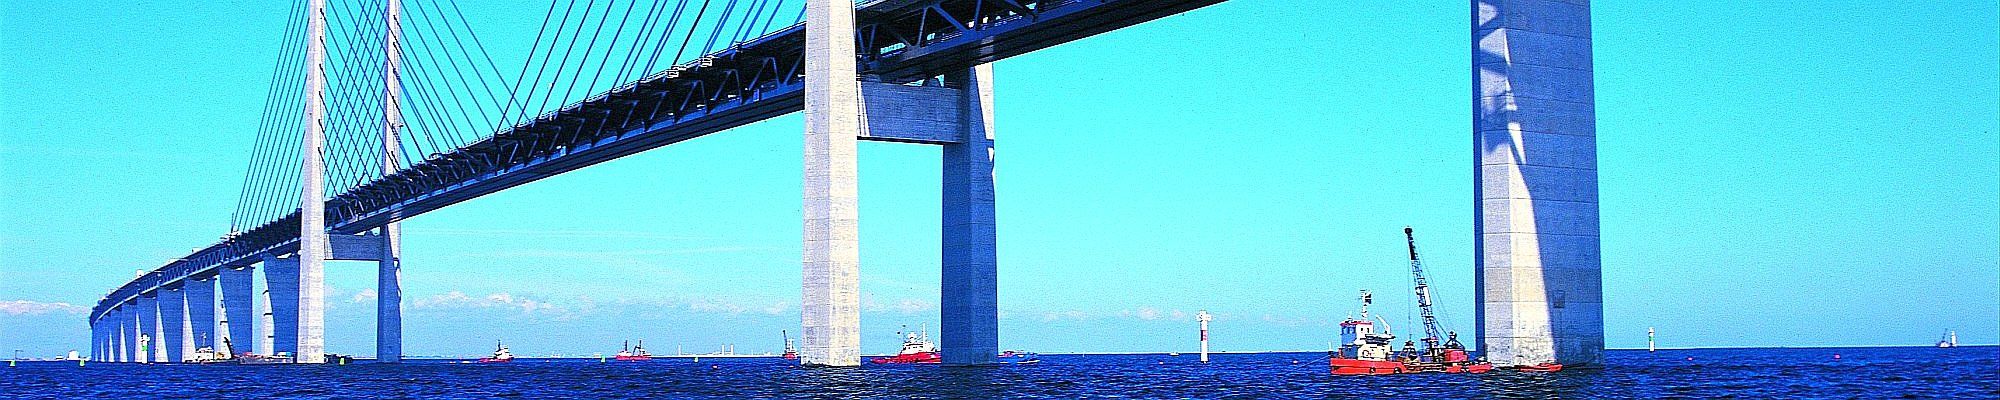 Die Öresundbrücke